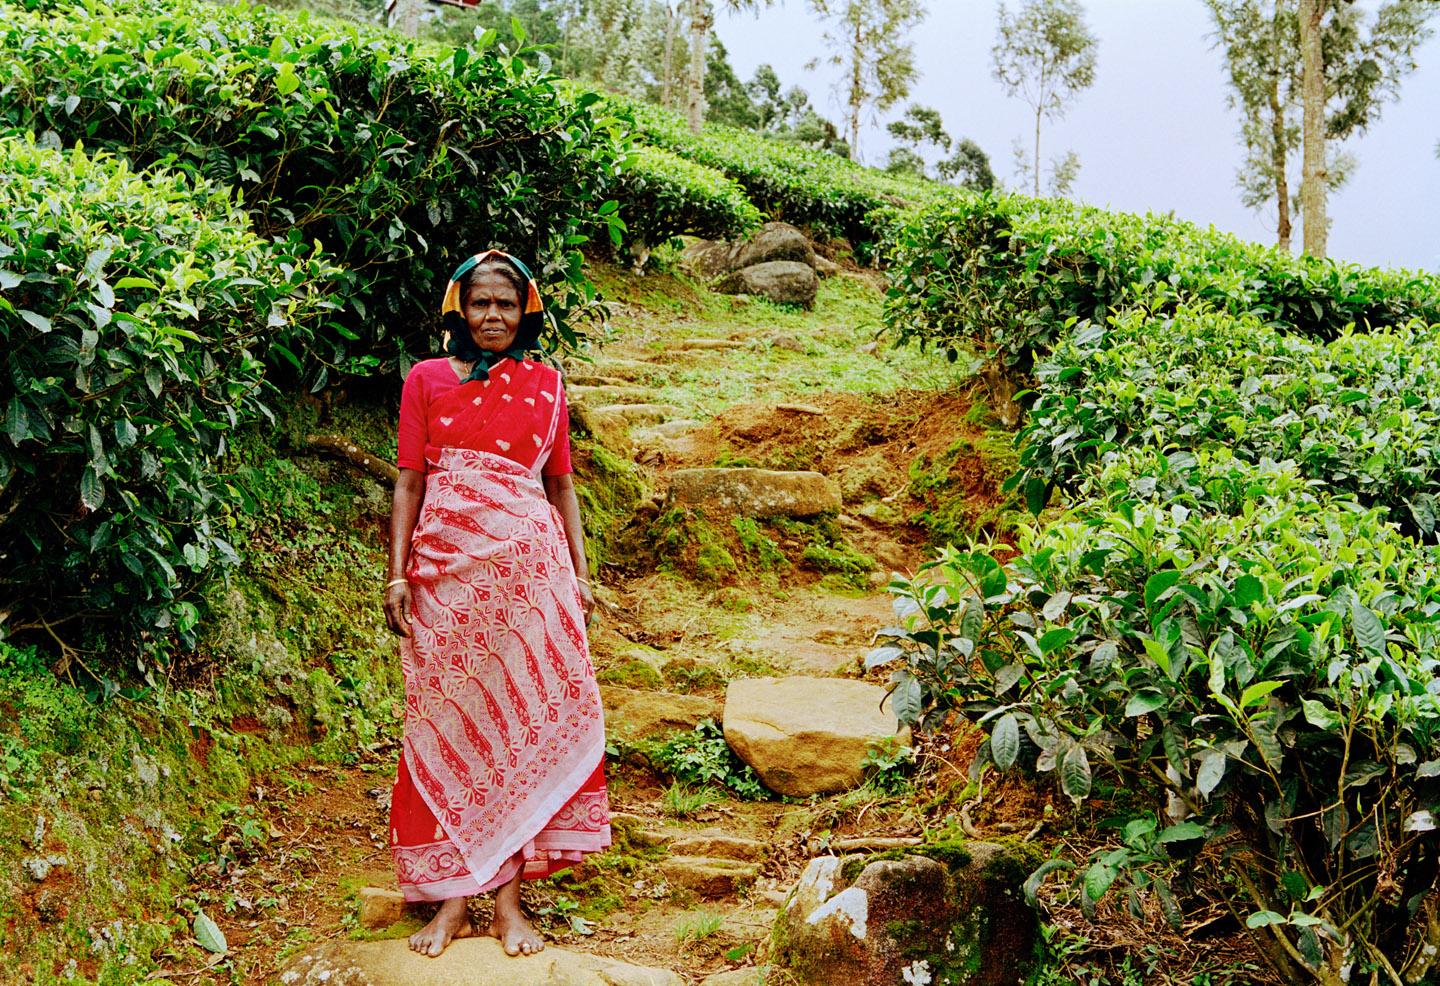 Tata tea fields, Munnar,  Kerala, India, 2006